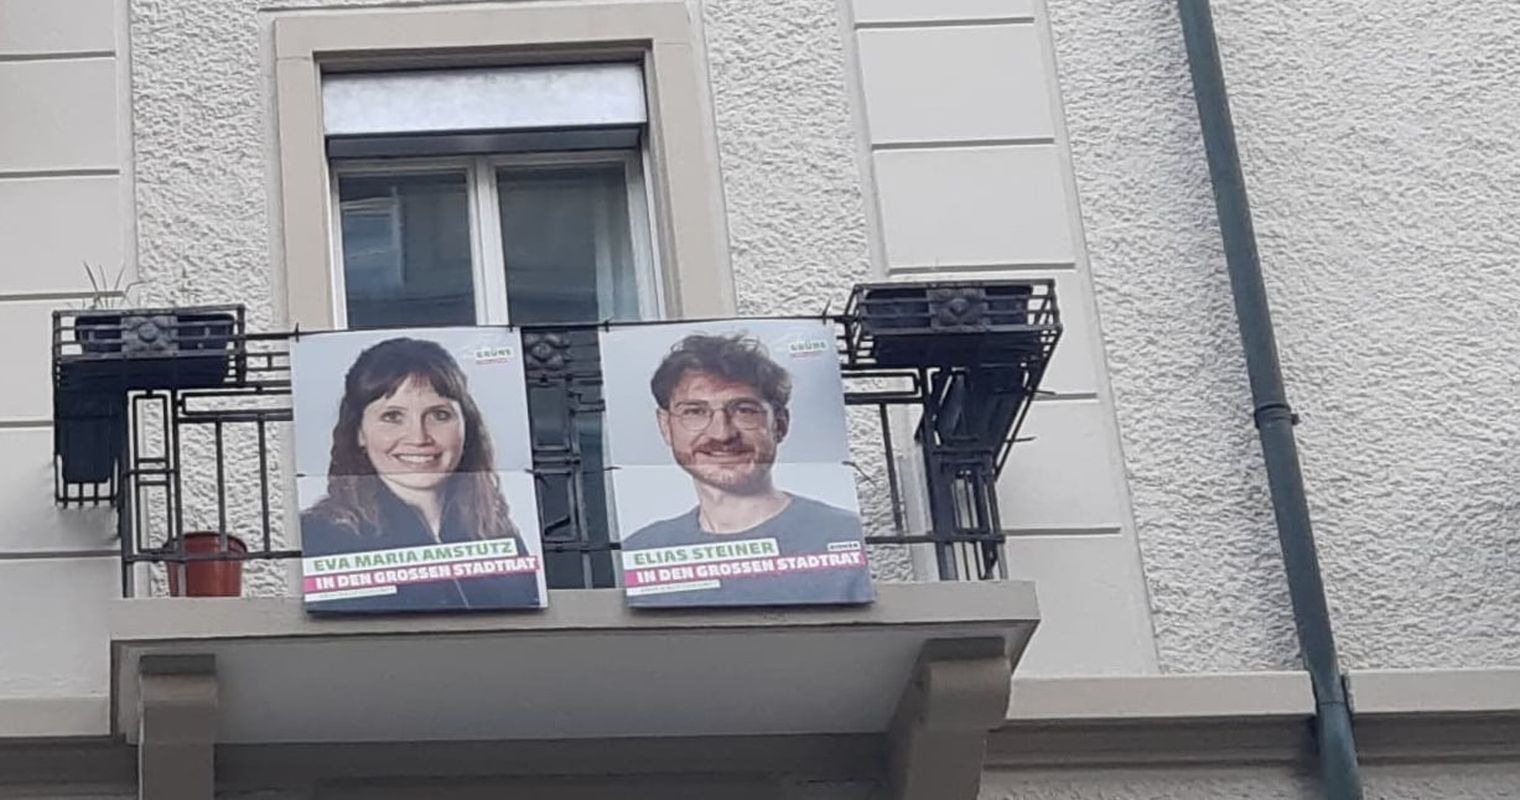 Wahlplakat auf Balkon: Verwaltung droht mit Kündigung